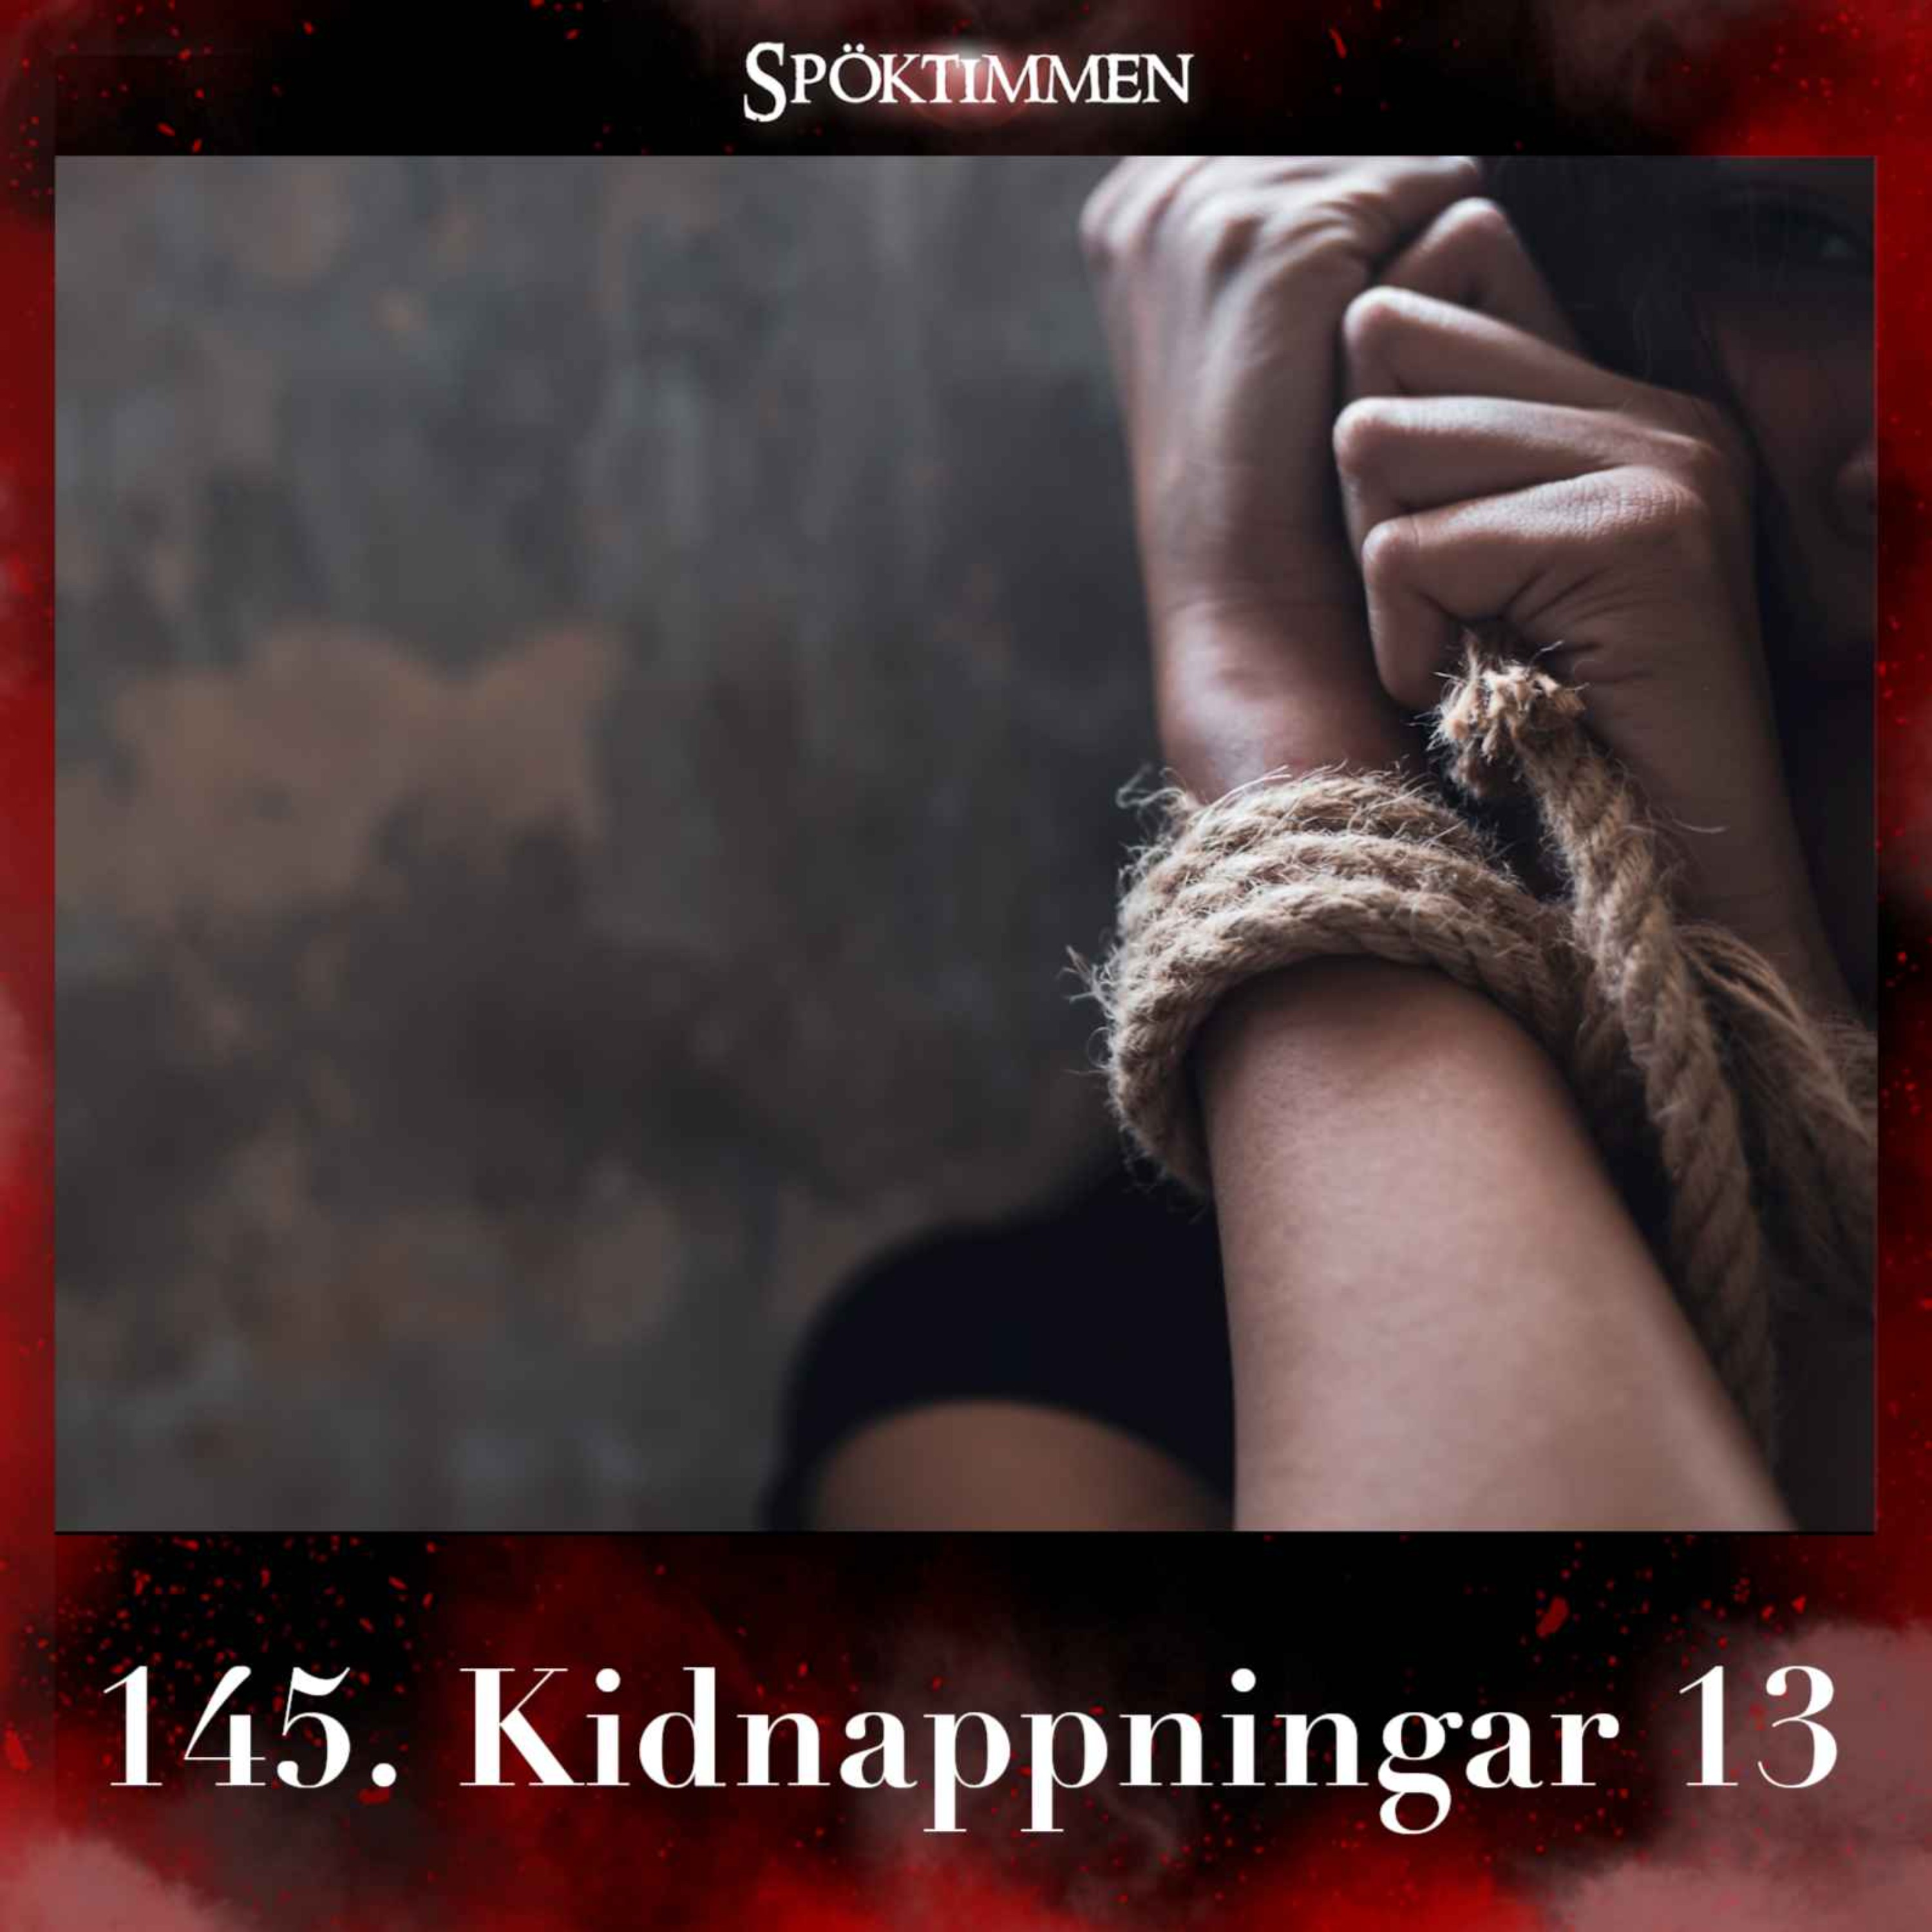 Kidnappningar 13